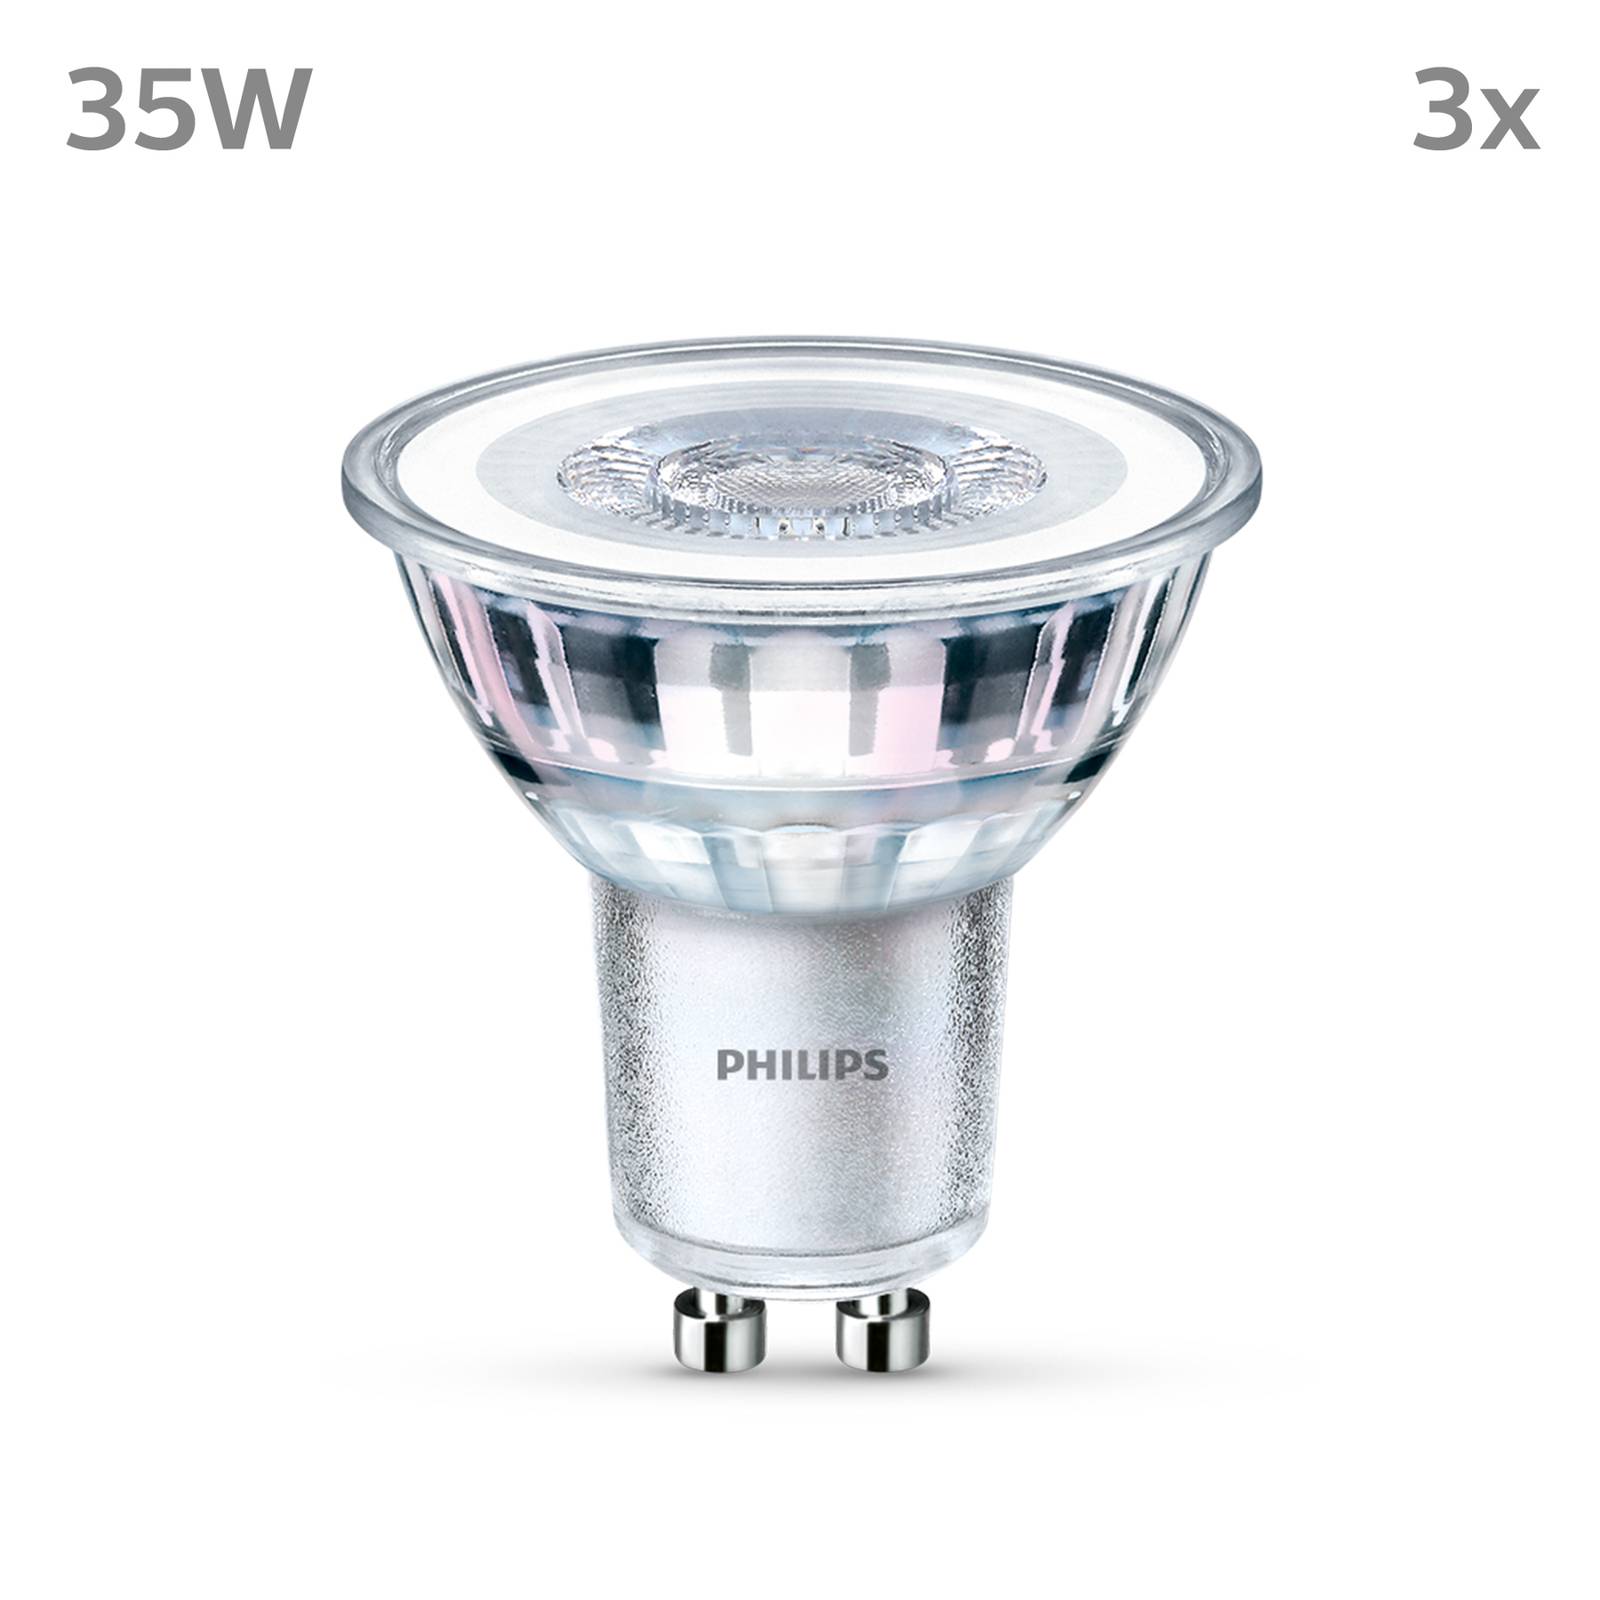 Philips LED-pære GU10 3,5 W 255lm 827 klar 36° 3